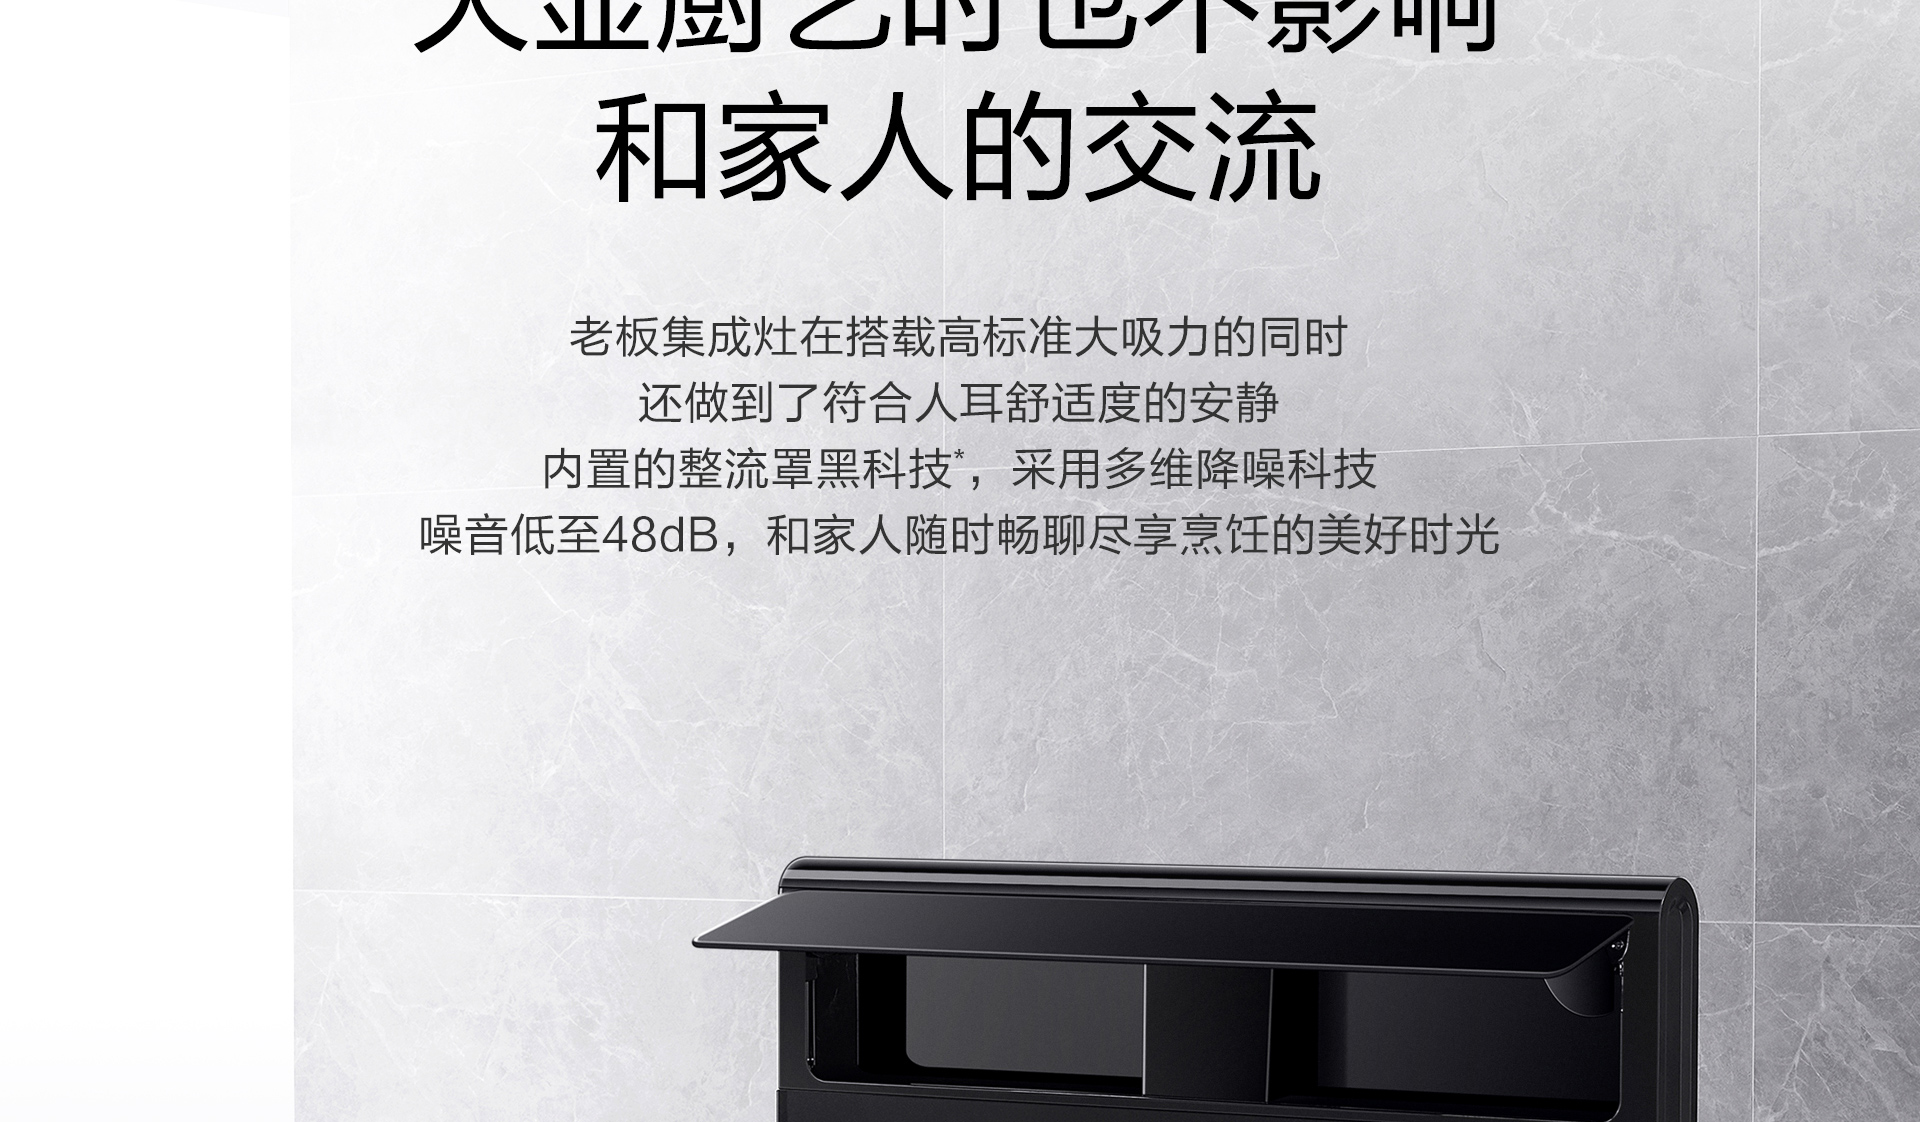 皇冠球网(中国)有限公司产品上新需求单-光焱洗消一体机S1-Plus_02.jpg